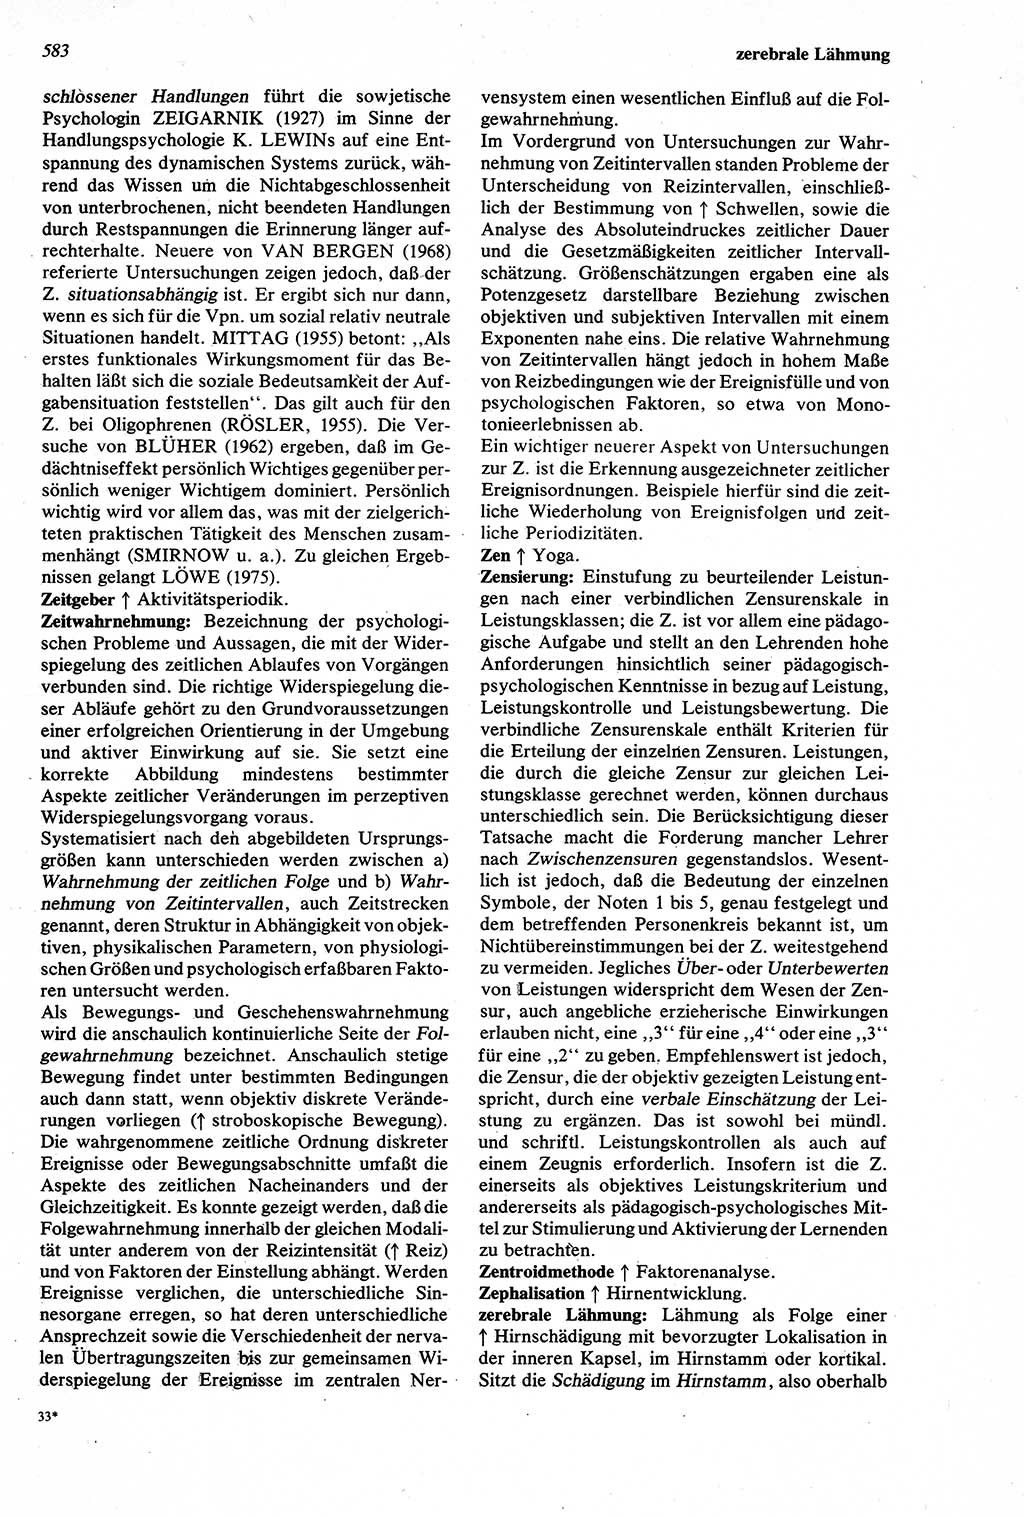 Wörterbuch der Psychologie [Deutsche Demokratische Republik (DDR)] 1976, Seite 583 (Wb. Psych. DDR 1976, S. 583)